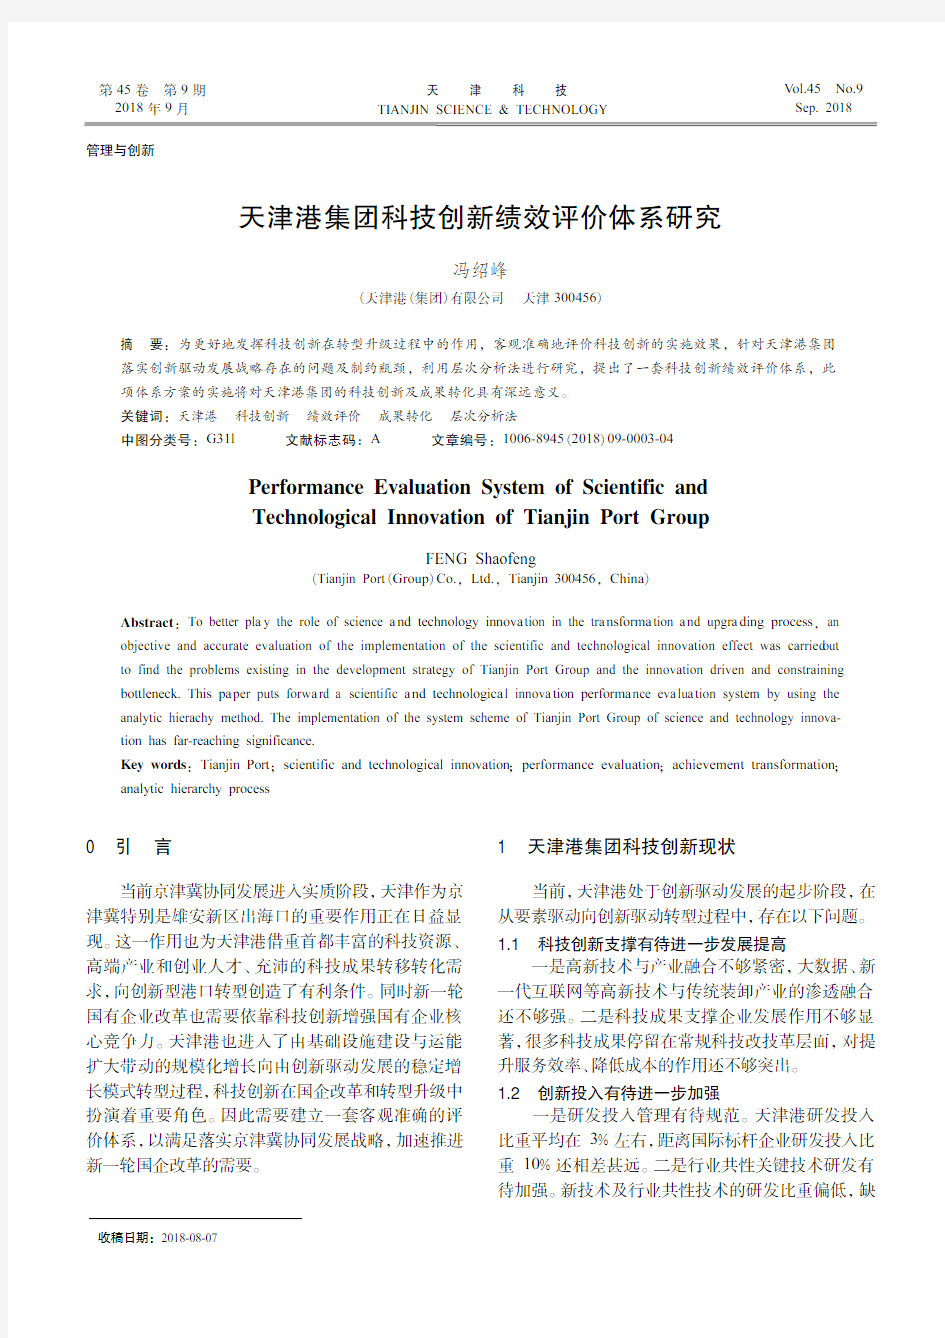 天津港集团科技创新绩效评价体系研究